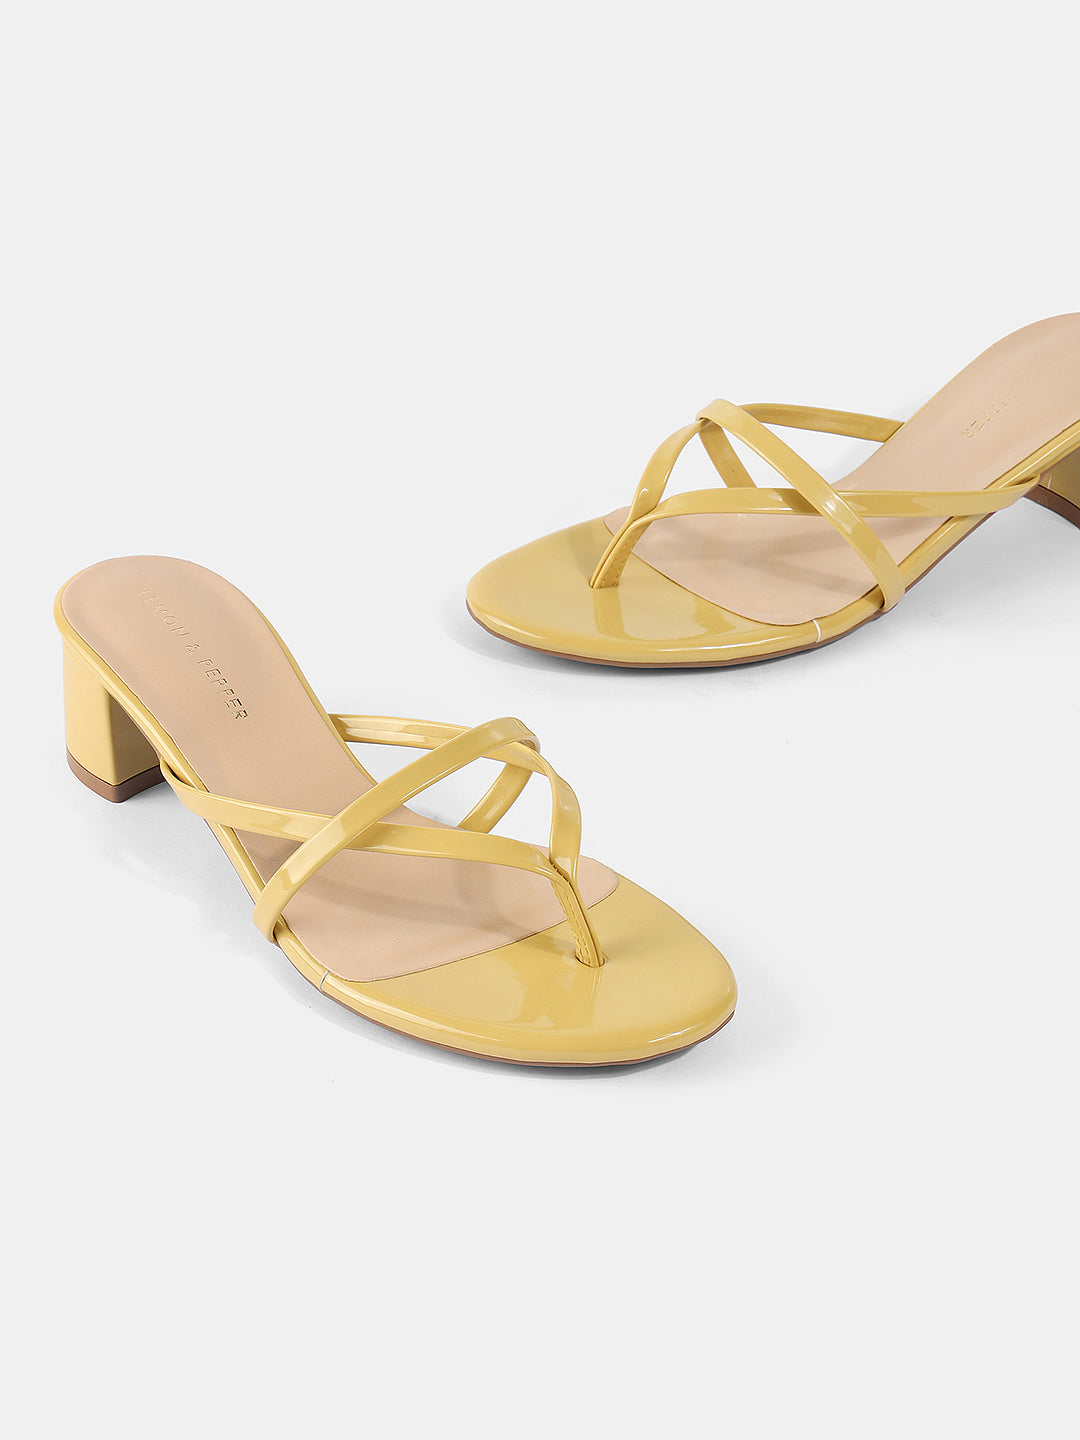 Lemon Cremé | A Custom Shoe concept by Alexander Peters